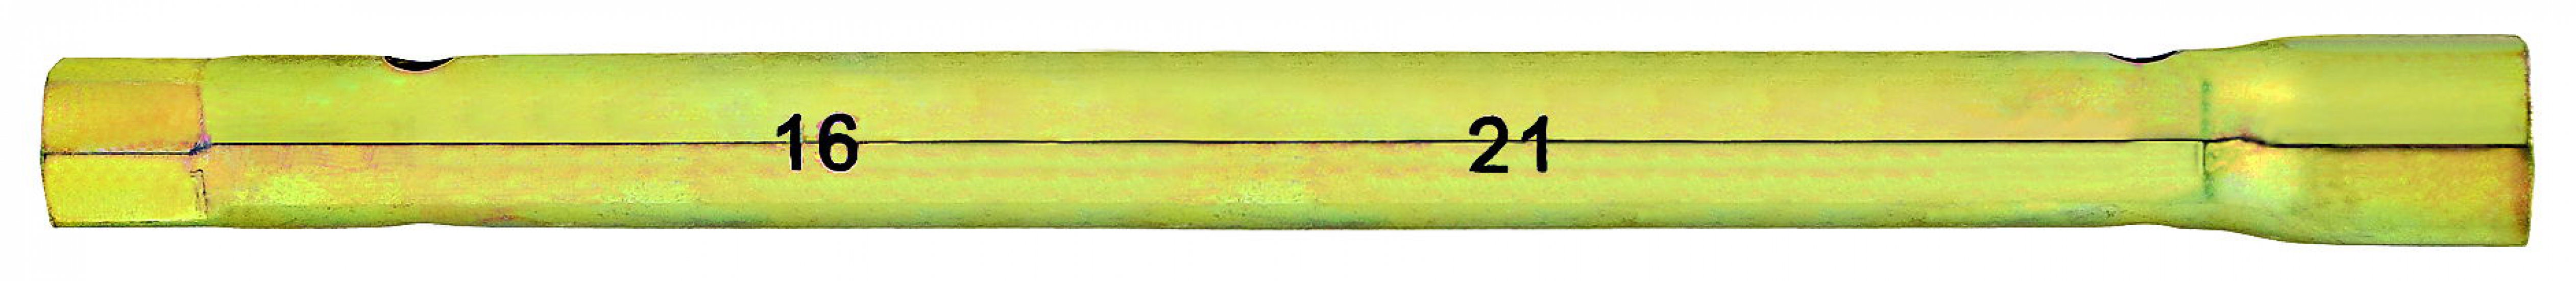 A1015/IN-060 Ключ-трубка свечная, двухсторонняя 16 - 21 мм, длина 30 см